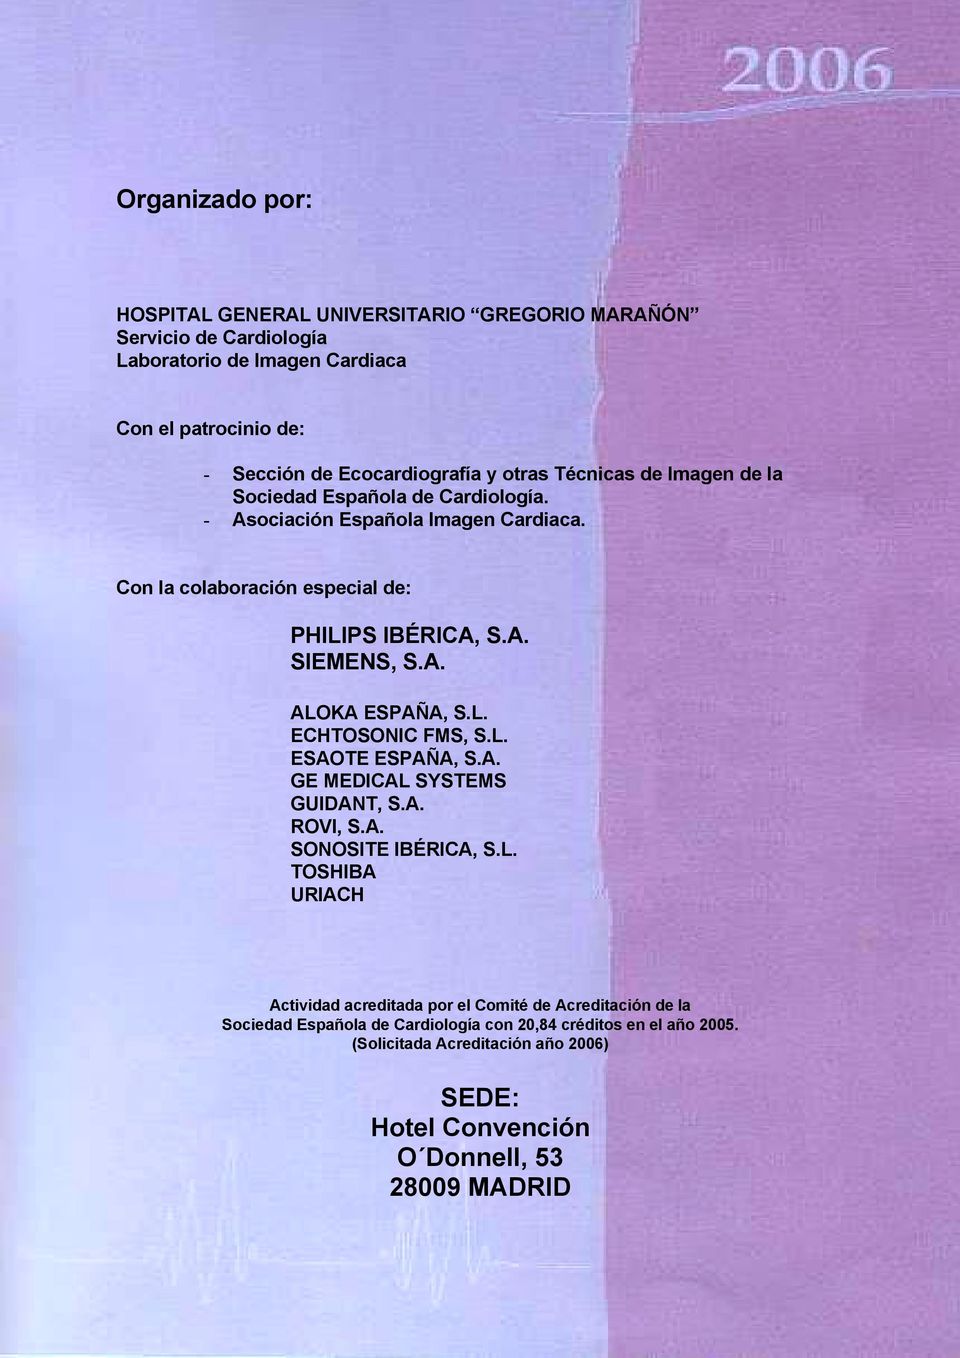 L. ECHTOSONIC FMS, S.L. ESAOTE ESPAÑA, S.A. GE MEDICAL SYSTEMS GUIDANT, S.A. ROVI, S.A. SONOSITE IBÉRICA, S.L. TOSHIBA URIACH Actividad acreditada por el Comité de Acreditación de la Sociedad Española de Cardiología con 20,84 créditos en el año 2005.